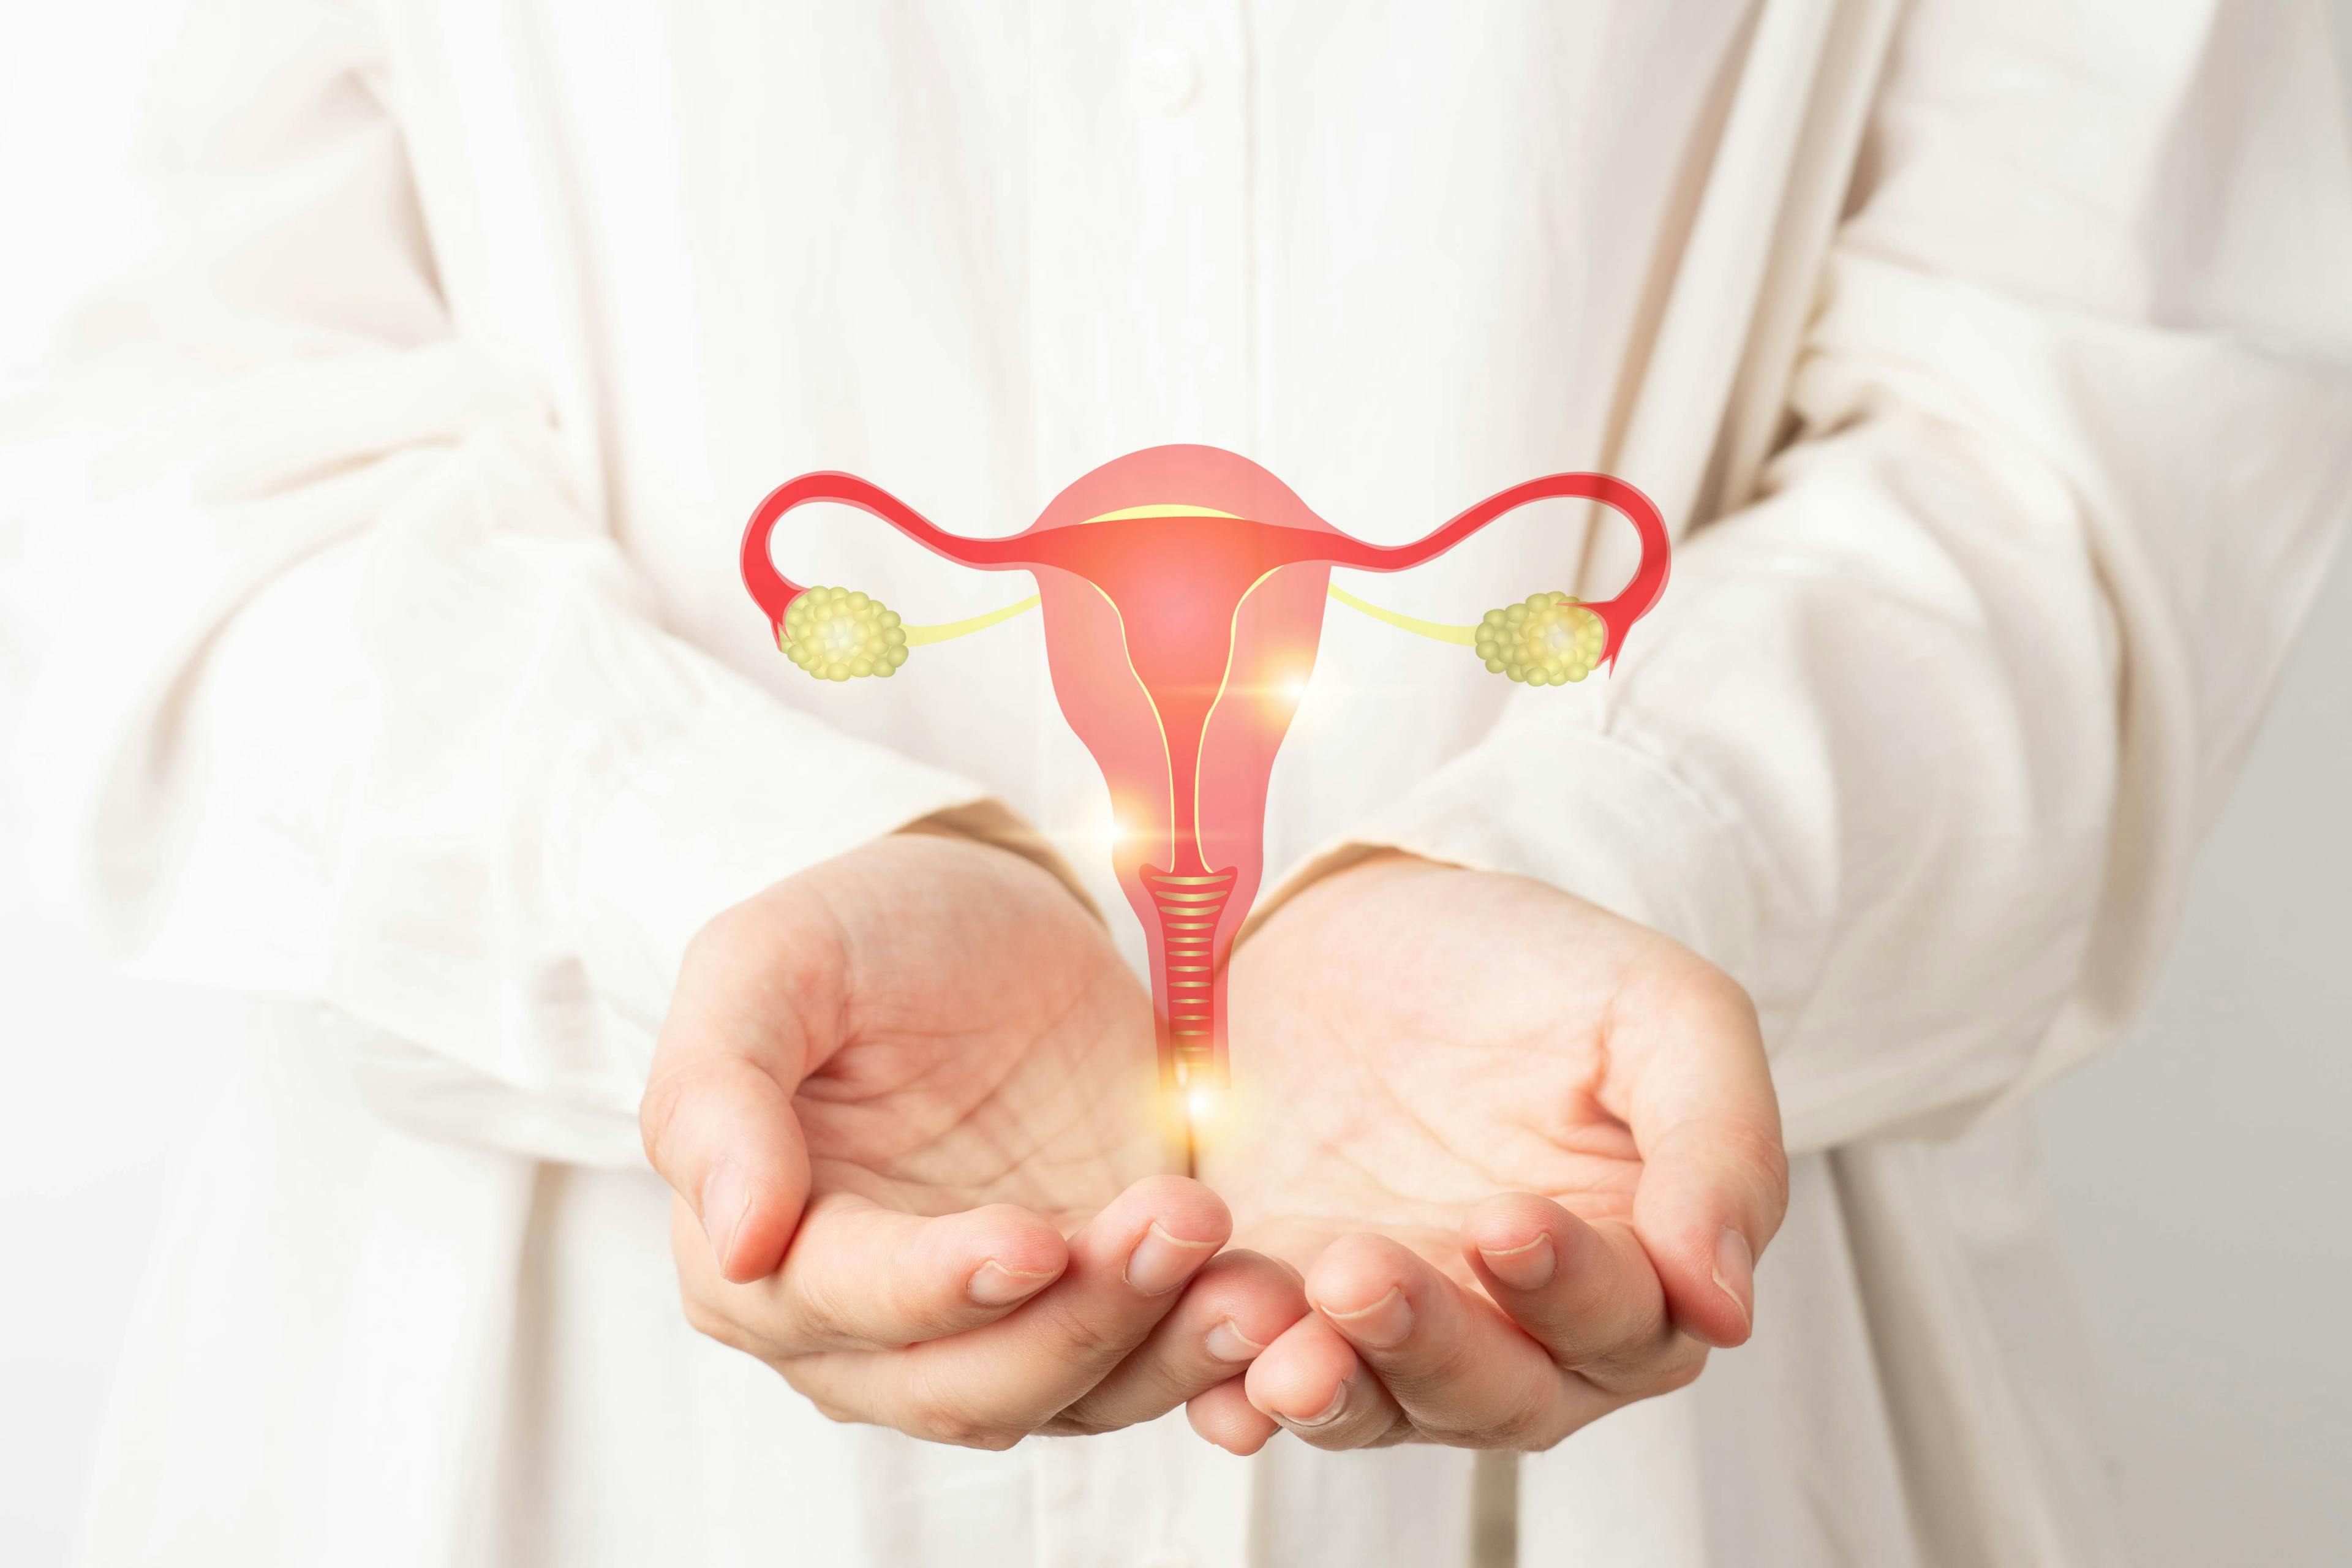 Model of uterus -- Image credit: Orawan | stock.adobe.com